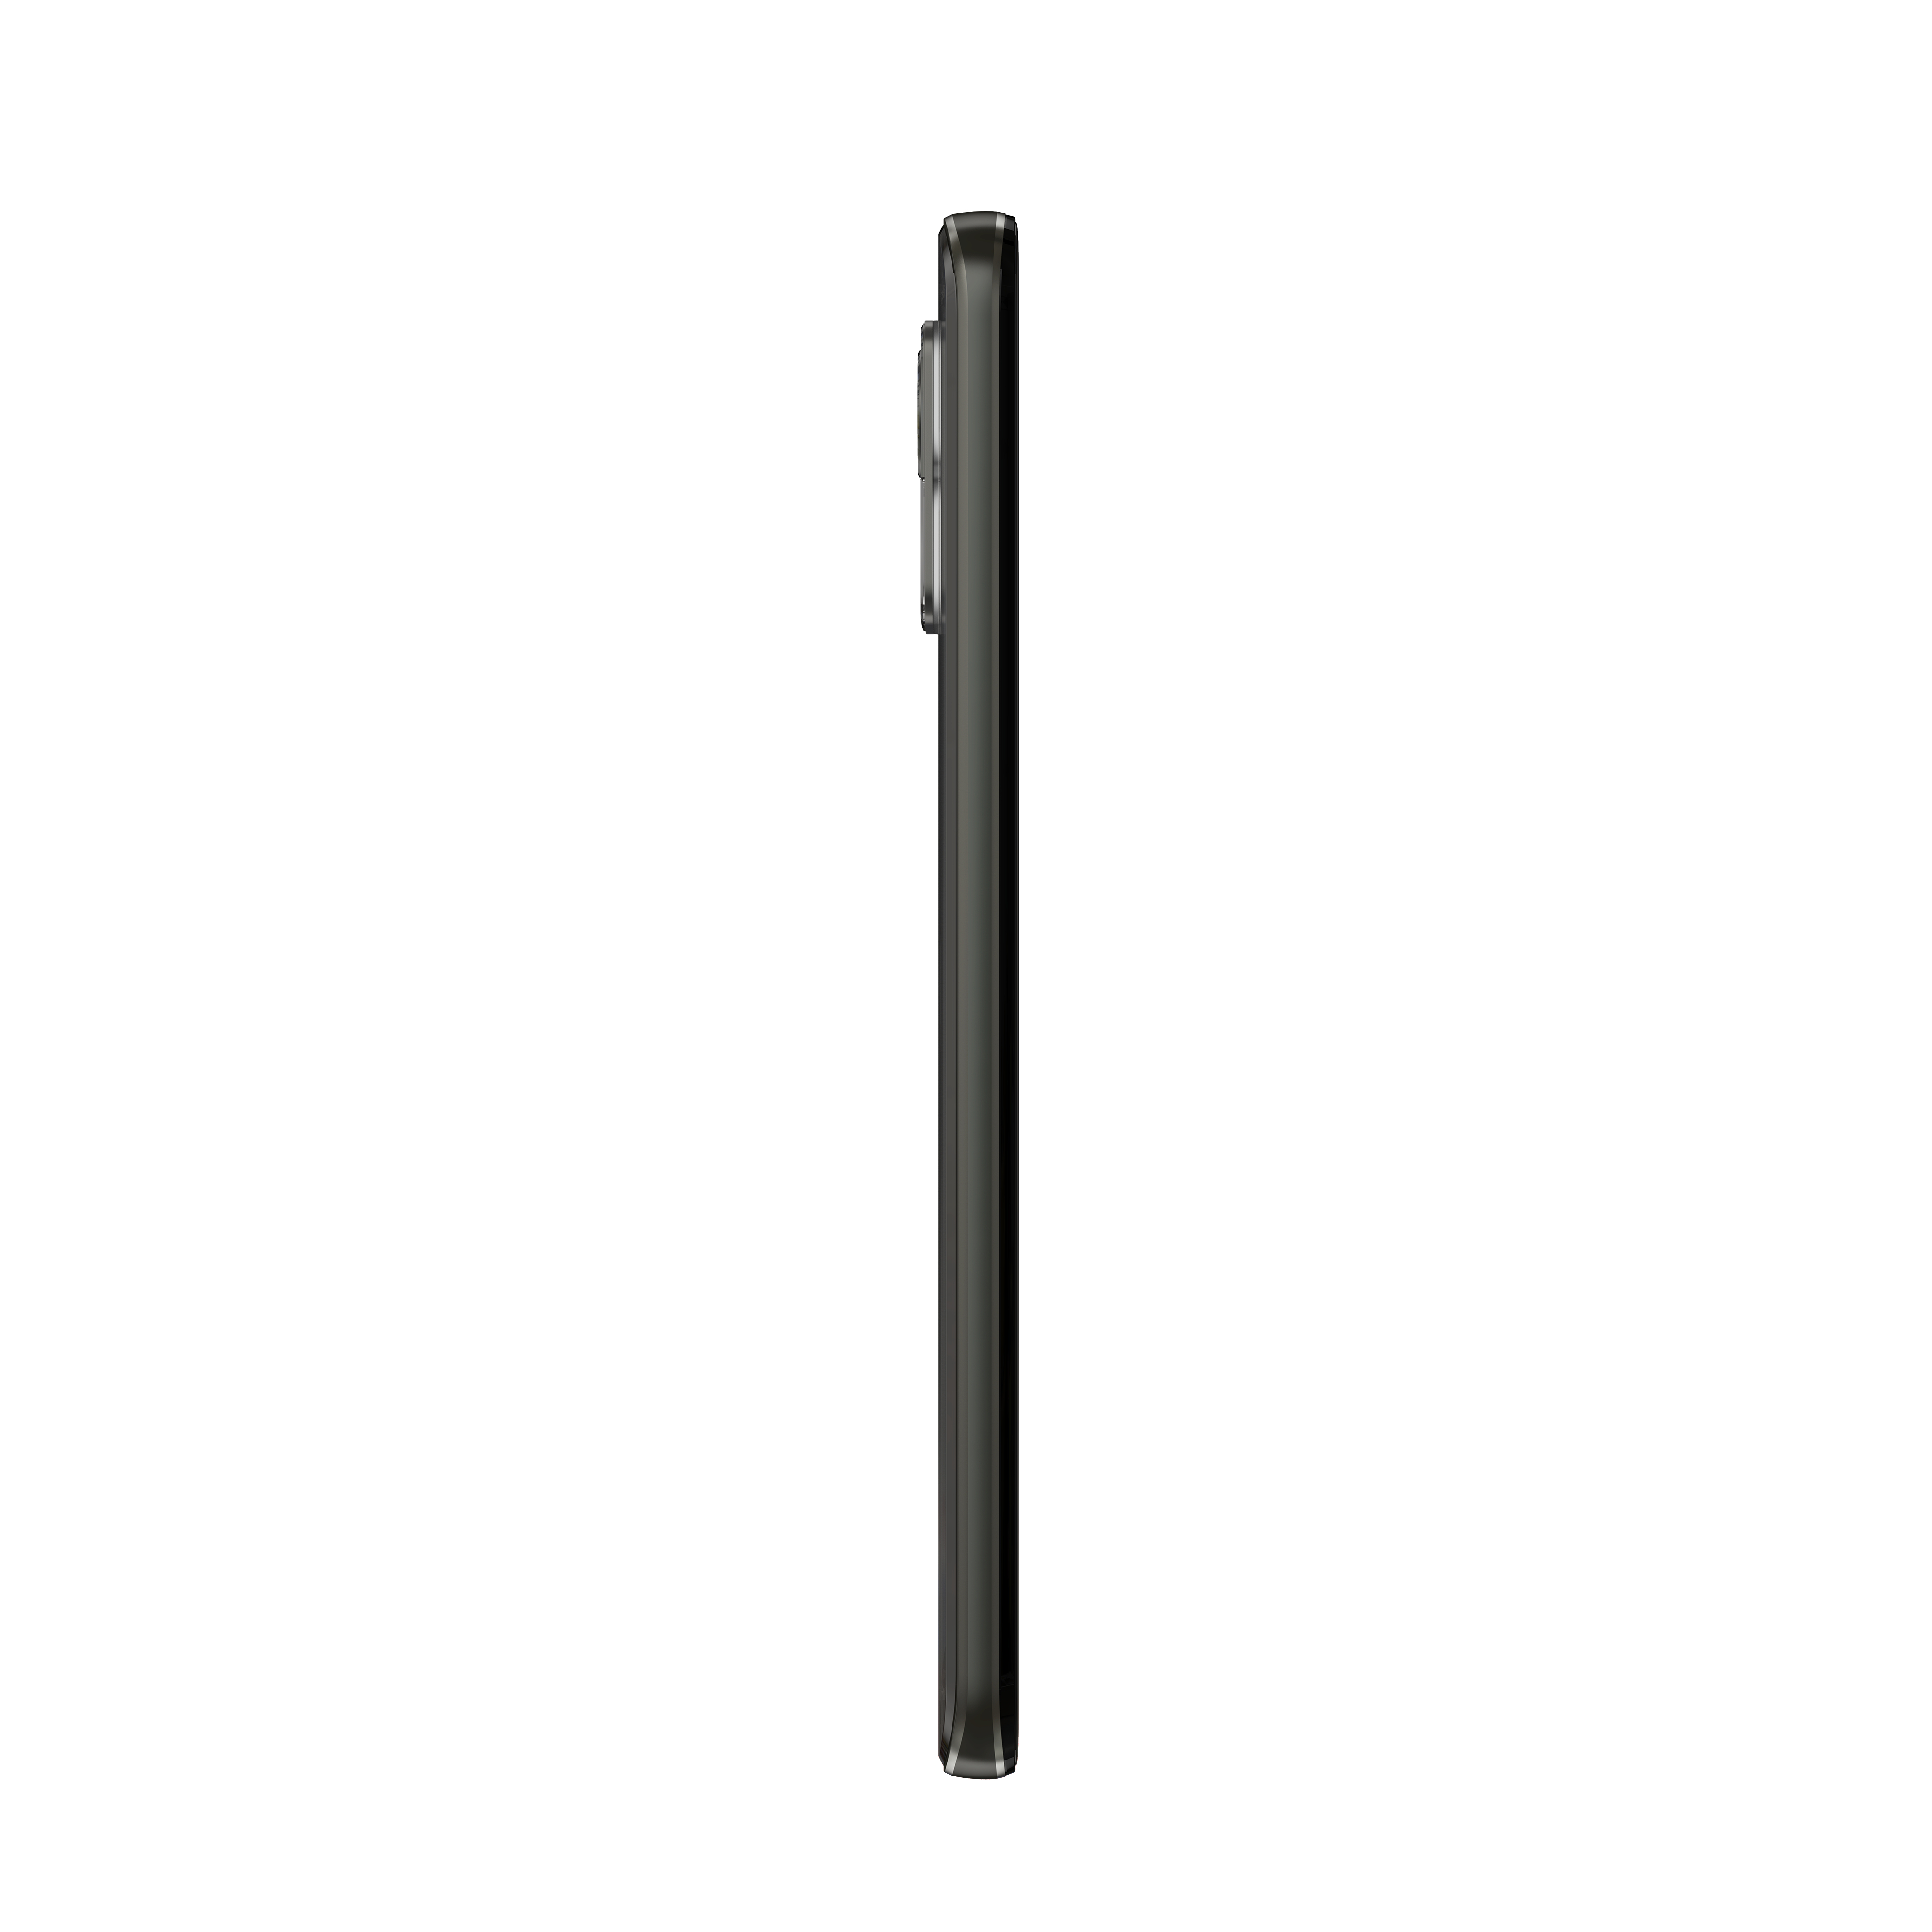 Black Edge SIM Onyx Neo MOTOROLA 30 Dual 128 GB